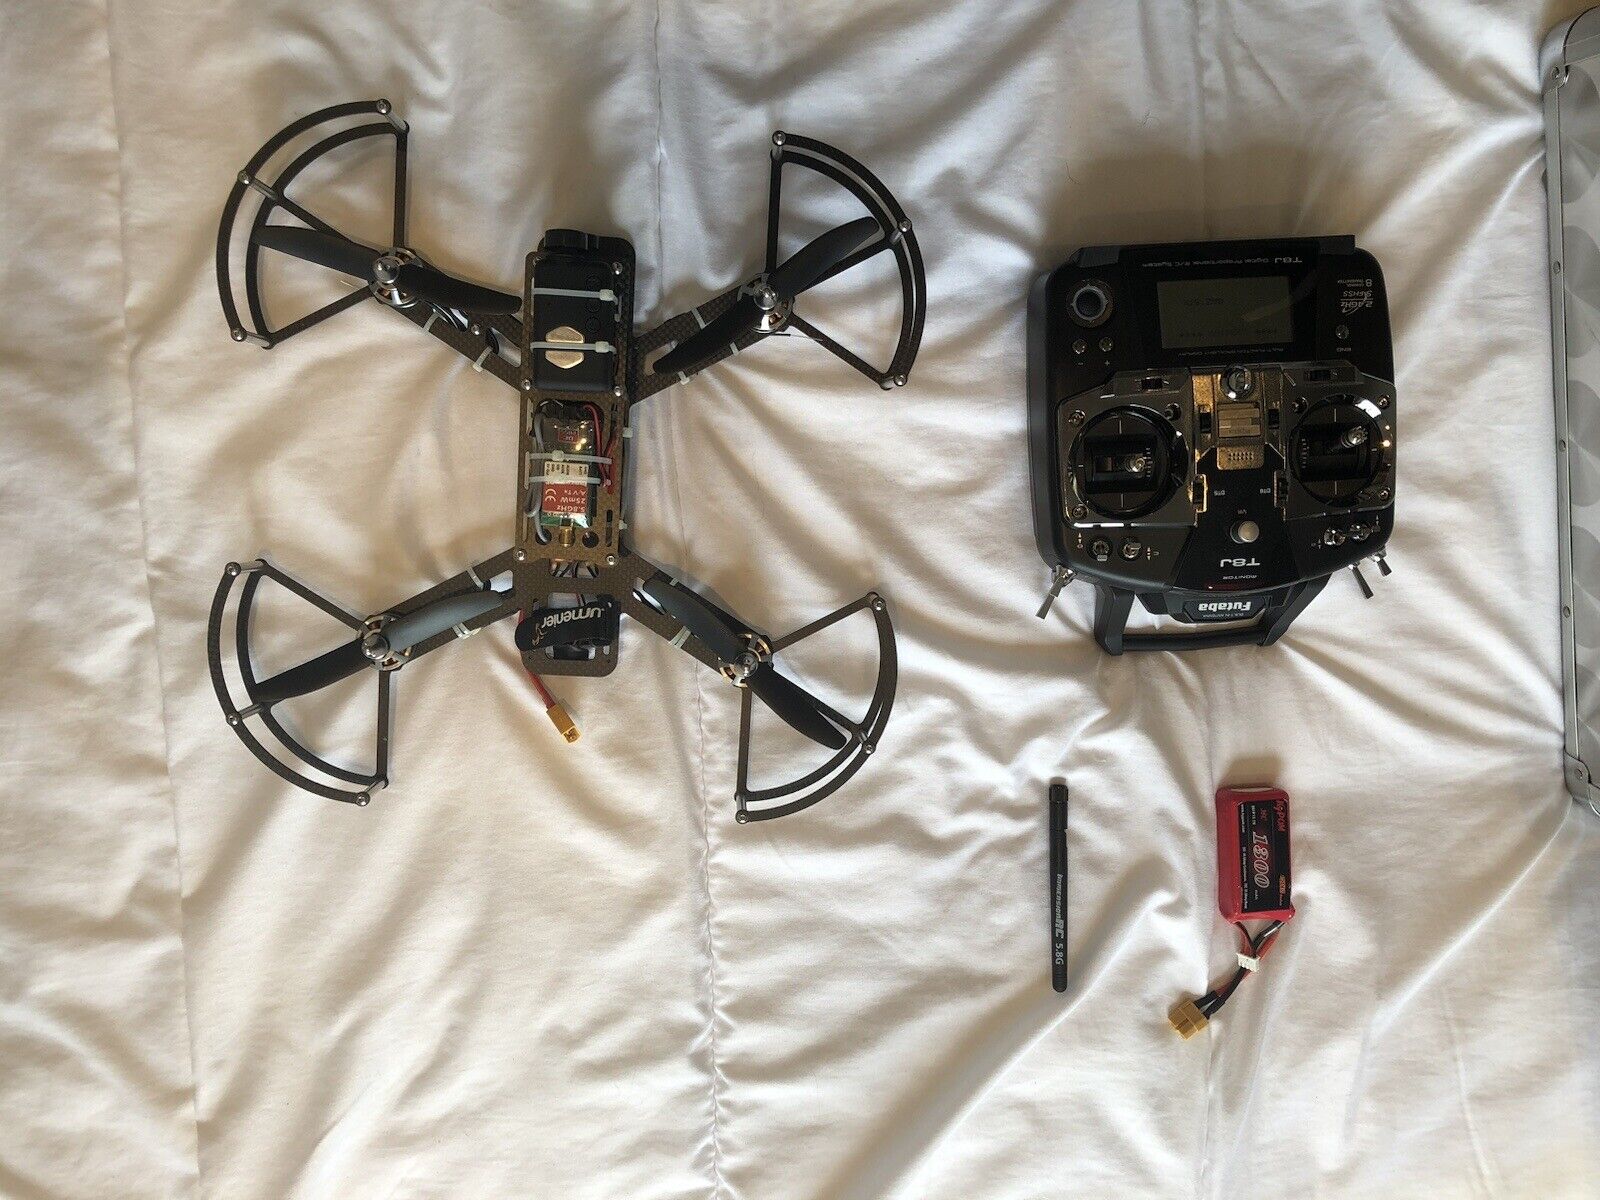 lumenier Qav250 racing drone